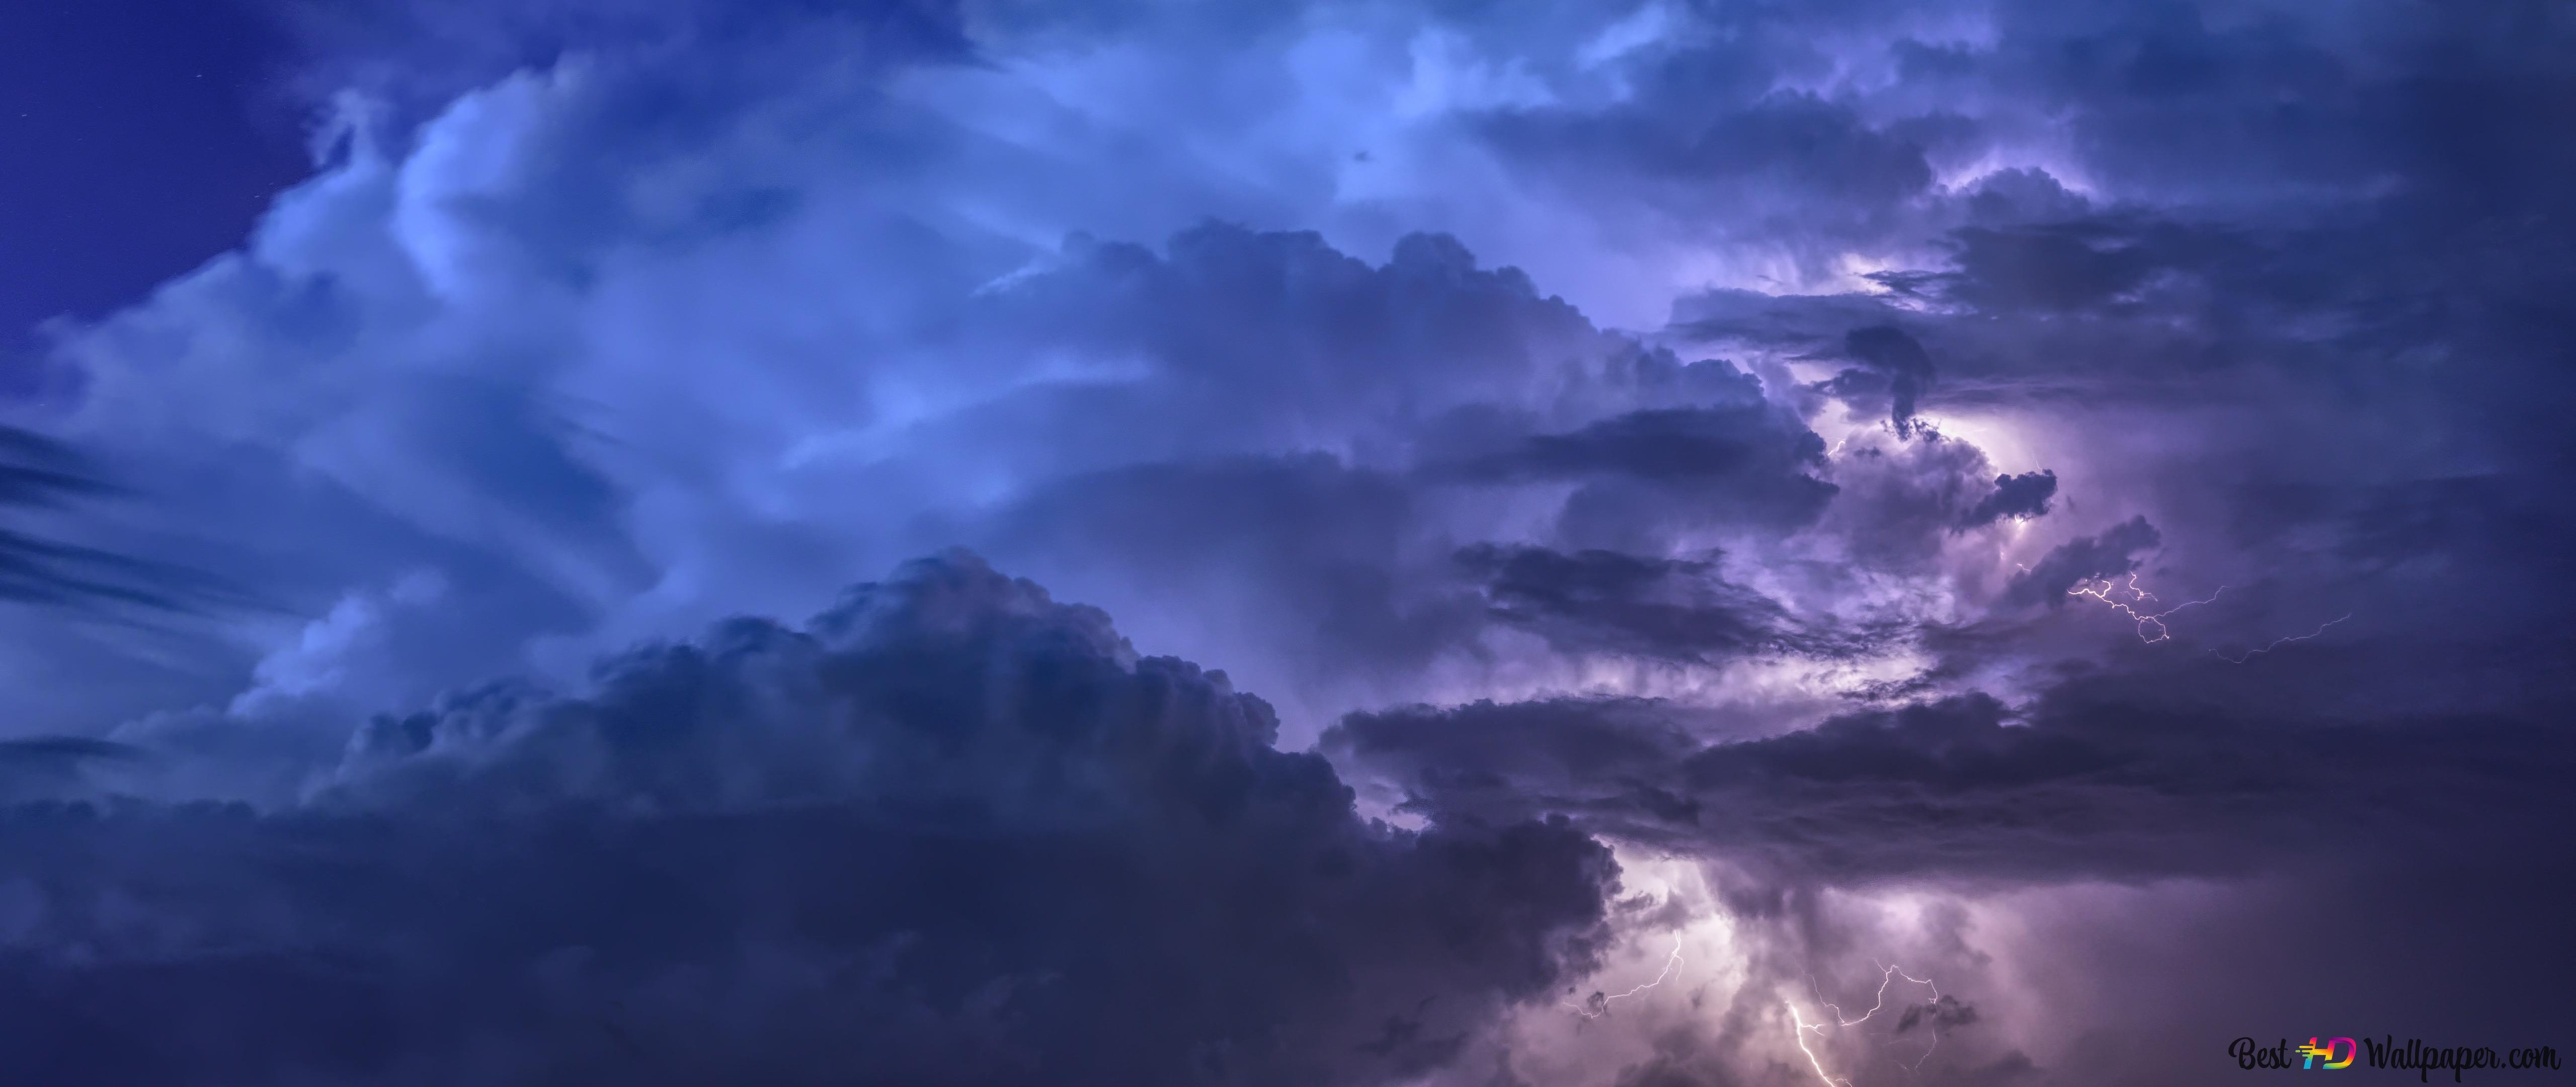 clouds lightning sky background 4K wallpaper download